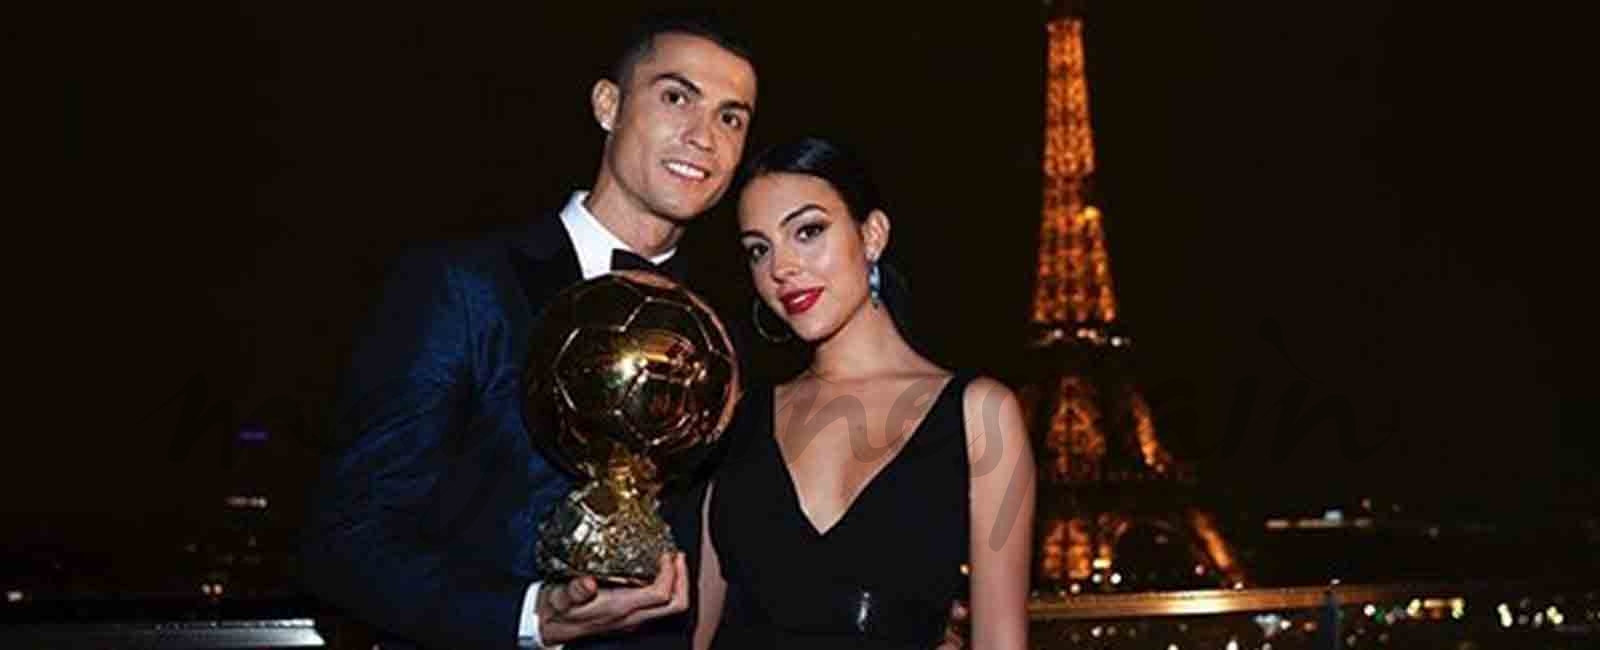 Cristiano Ronaldo consigue su quinto “Balón de Oro”